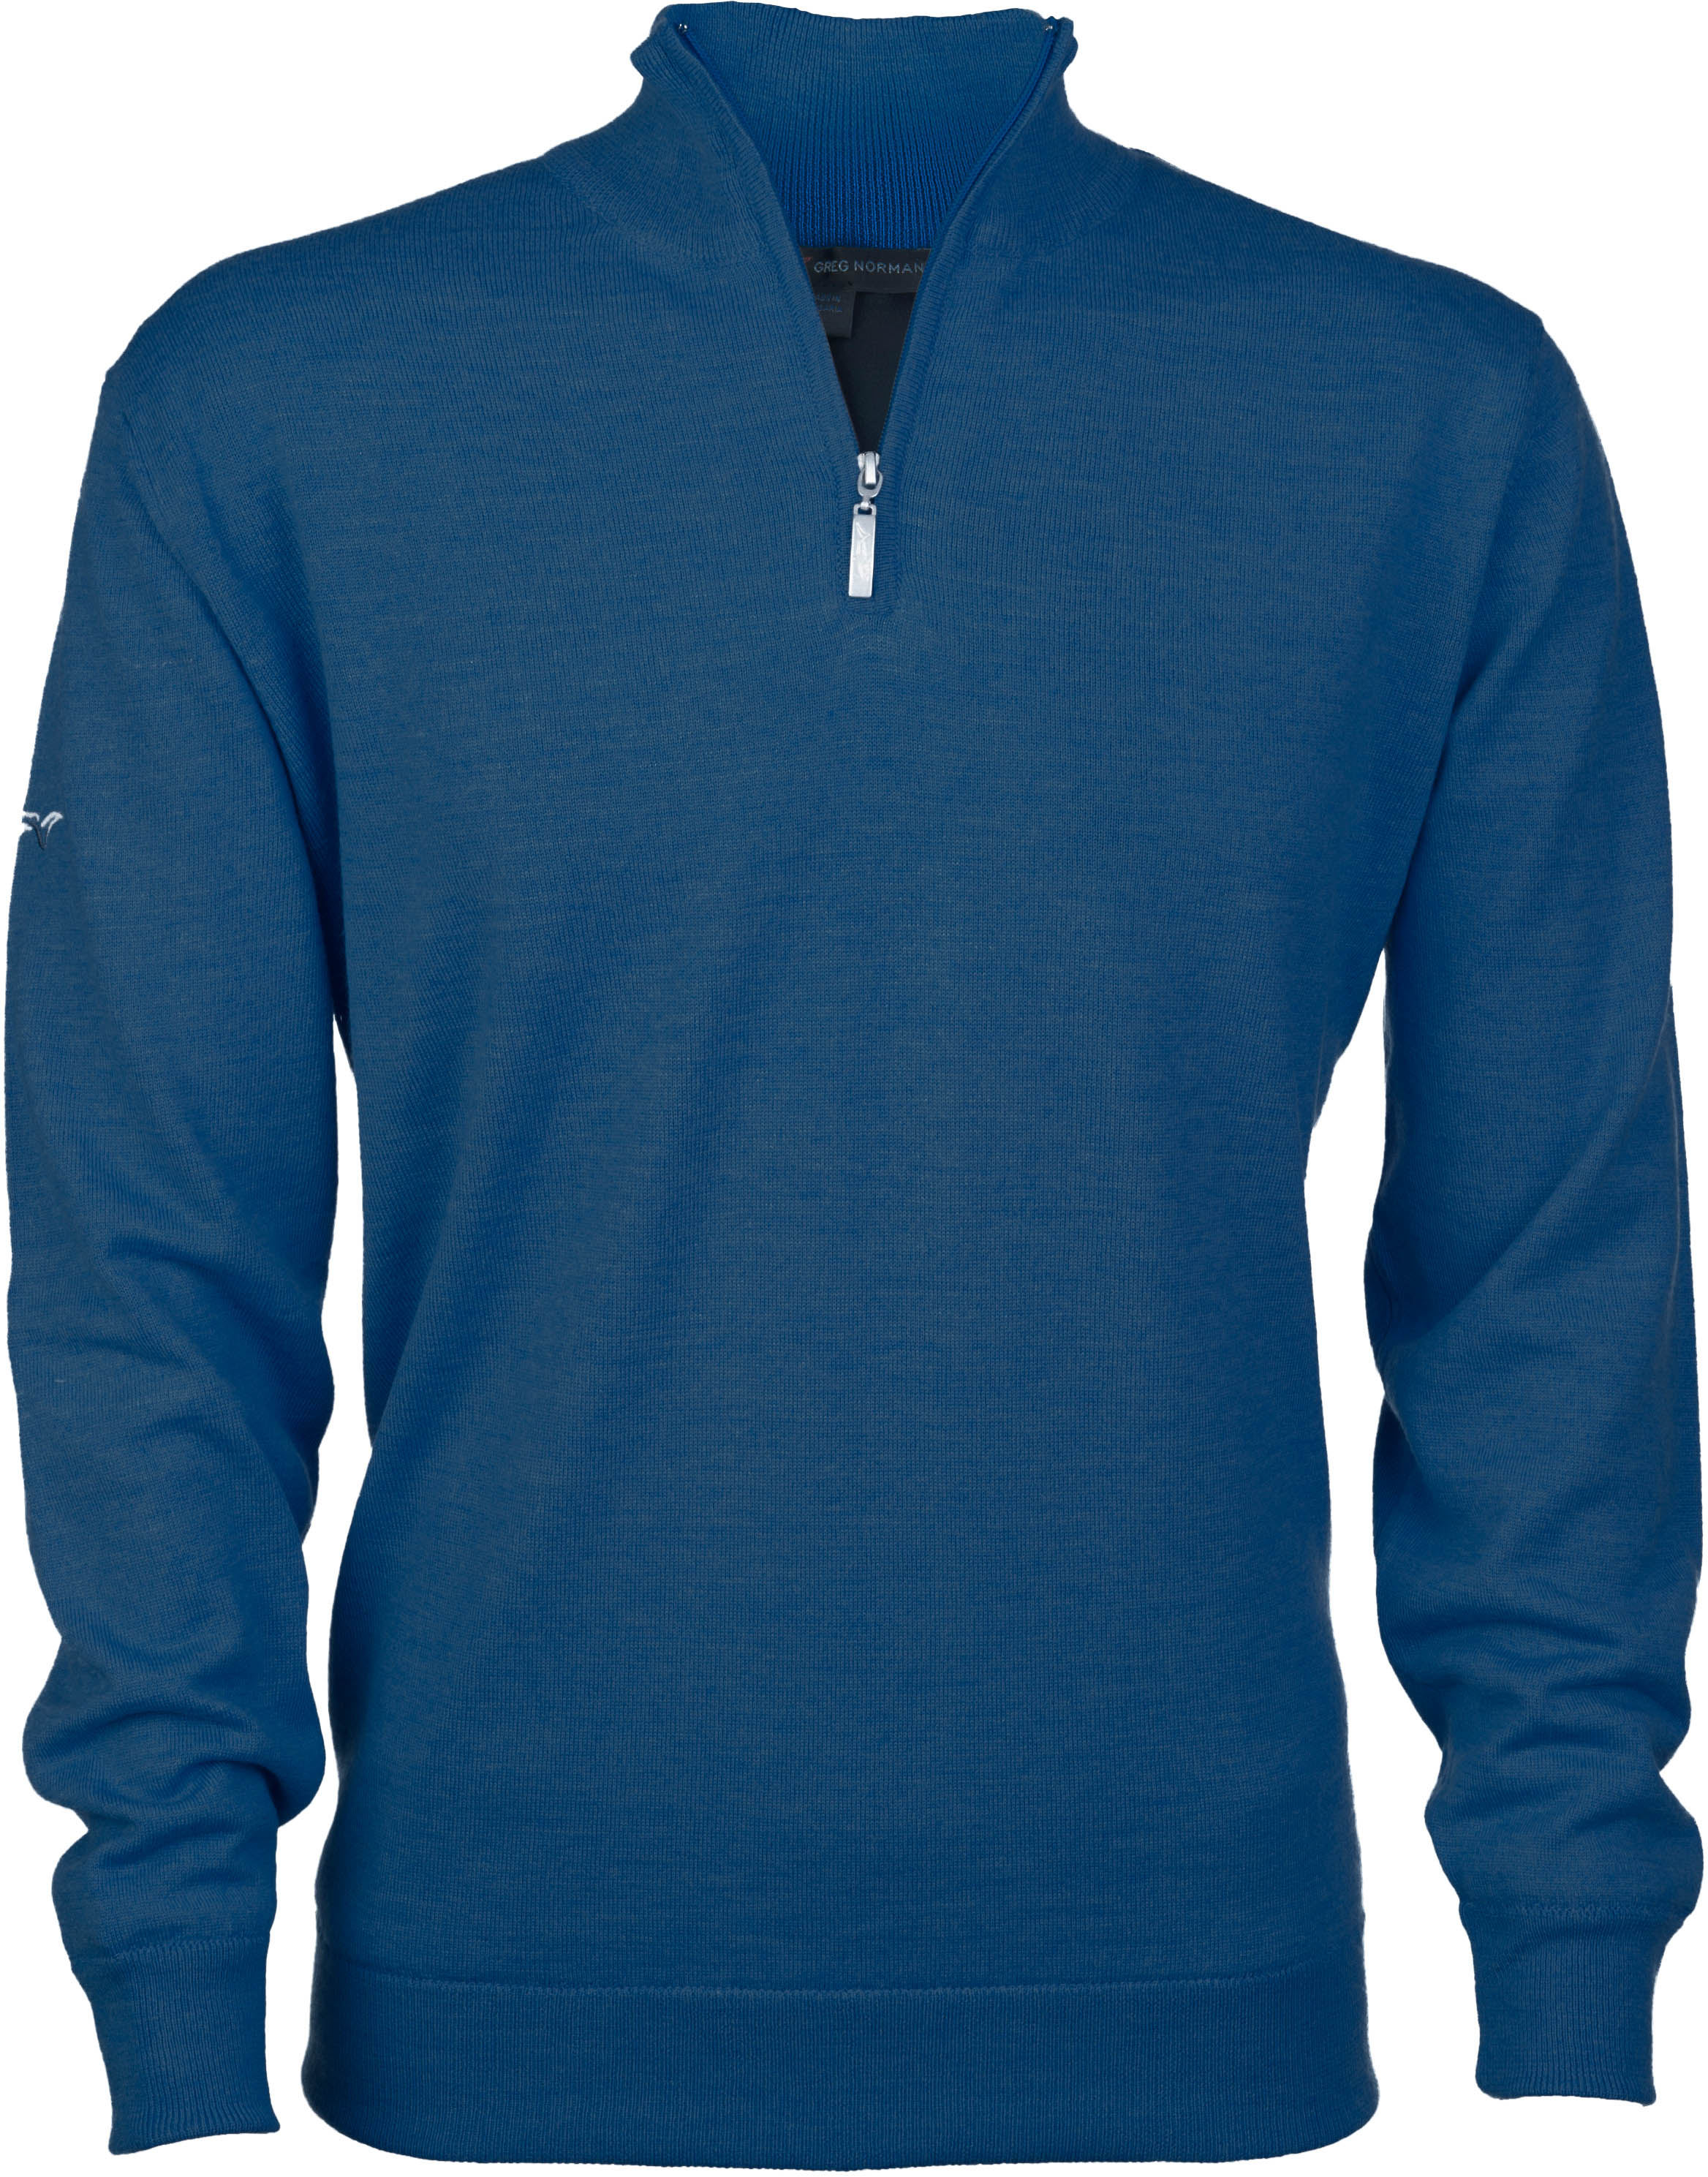 Greg Norman Windbreaker Lined 1/4 Zip Sweater, jeans